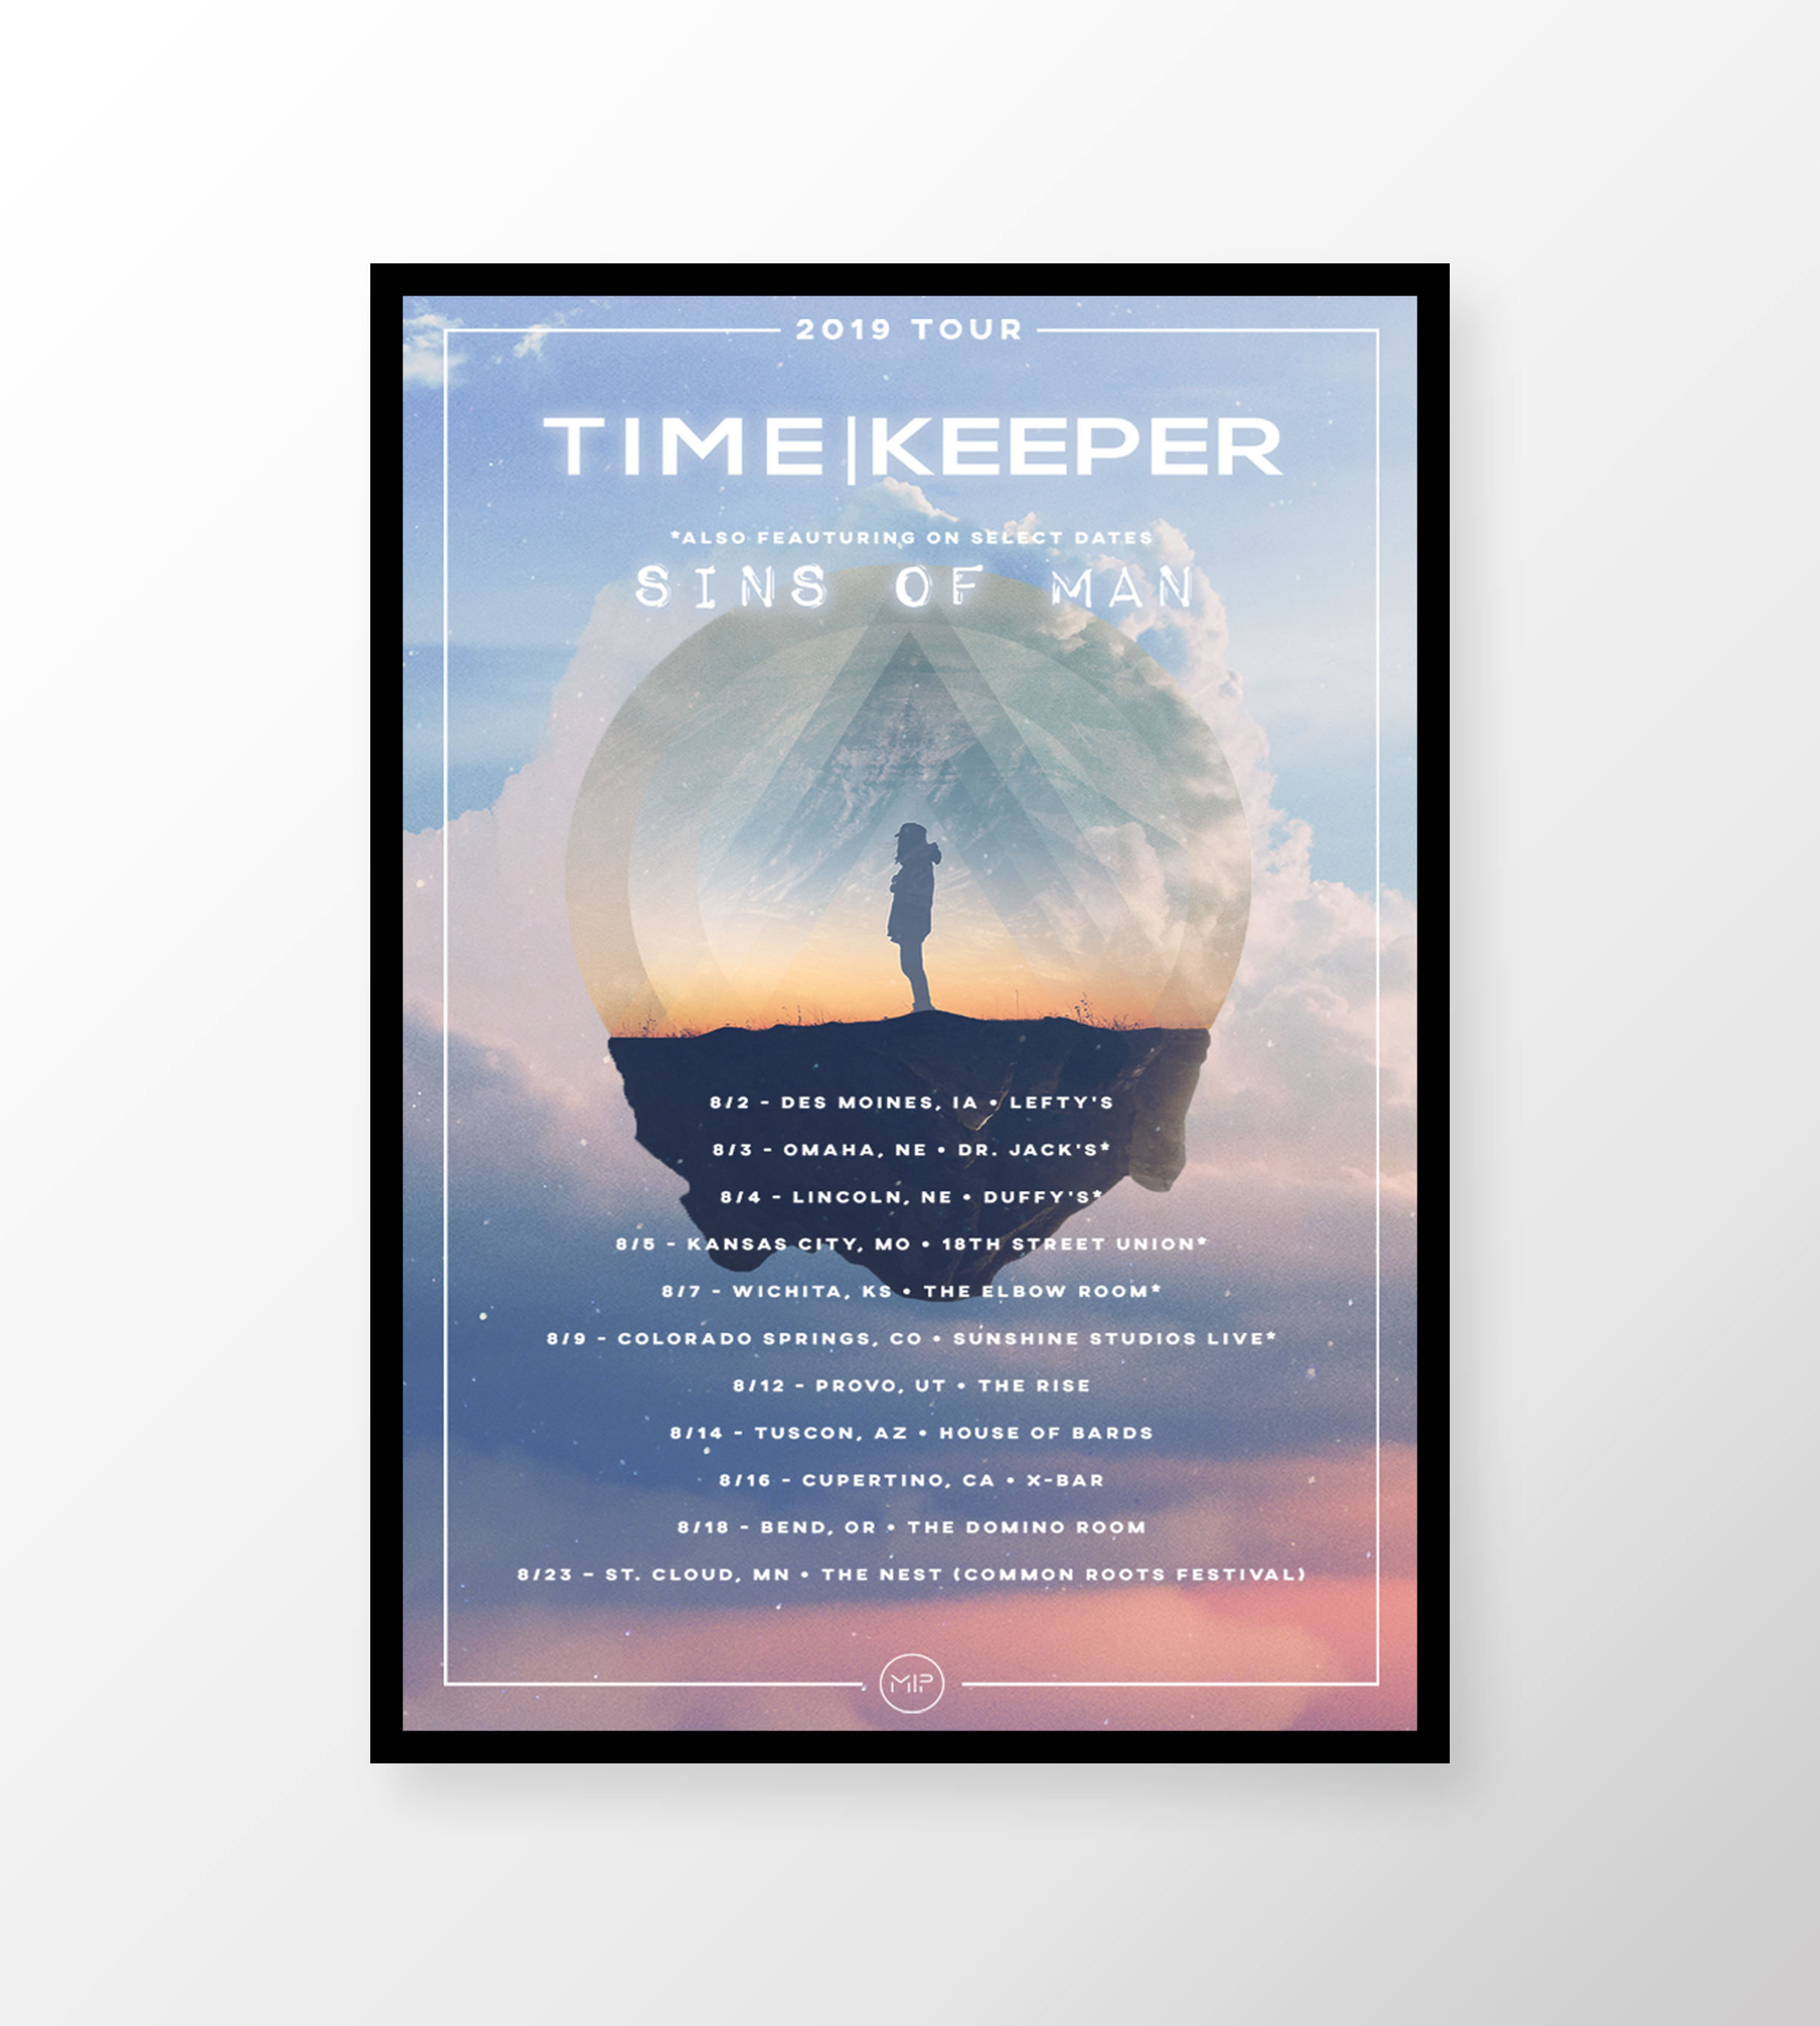 Timekeeper - Tour Full Flyer Mockup.jpg